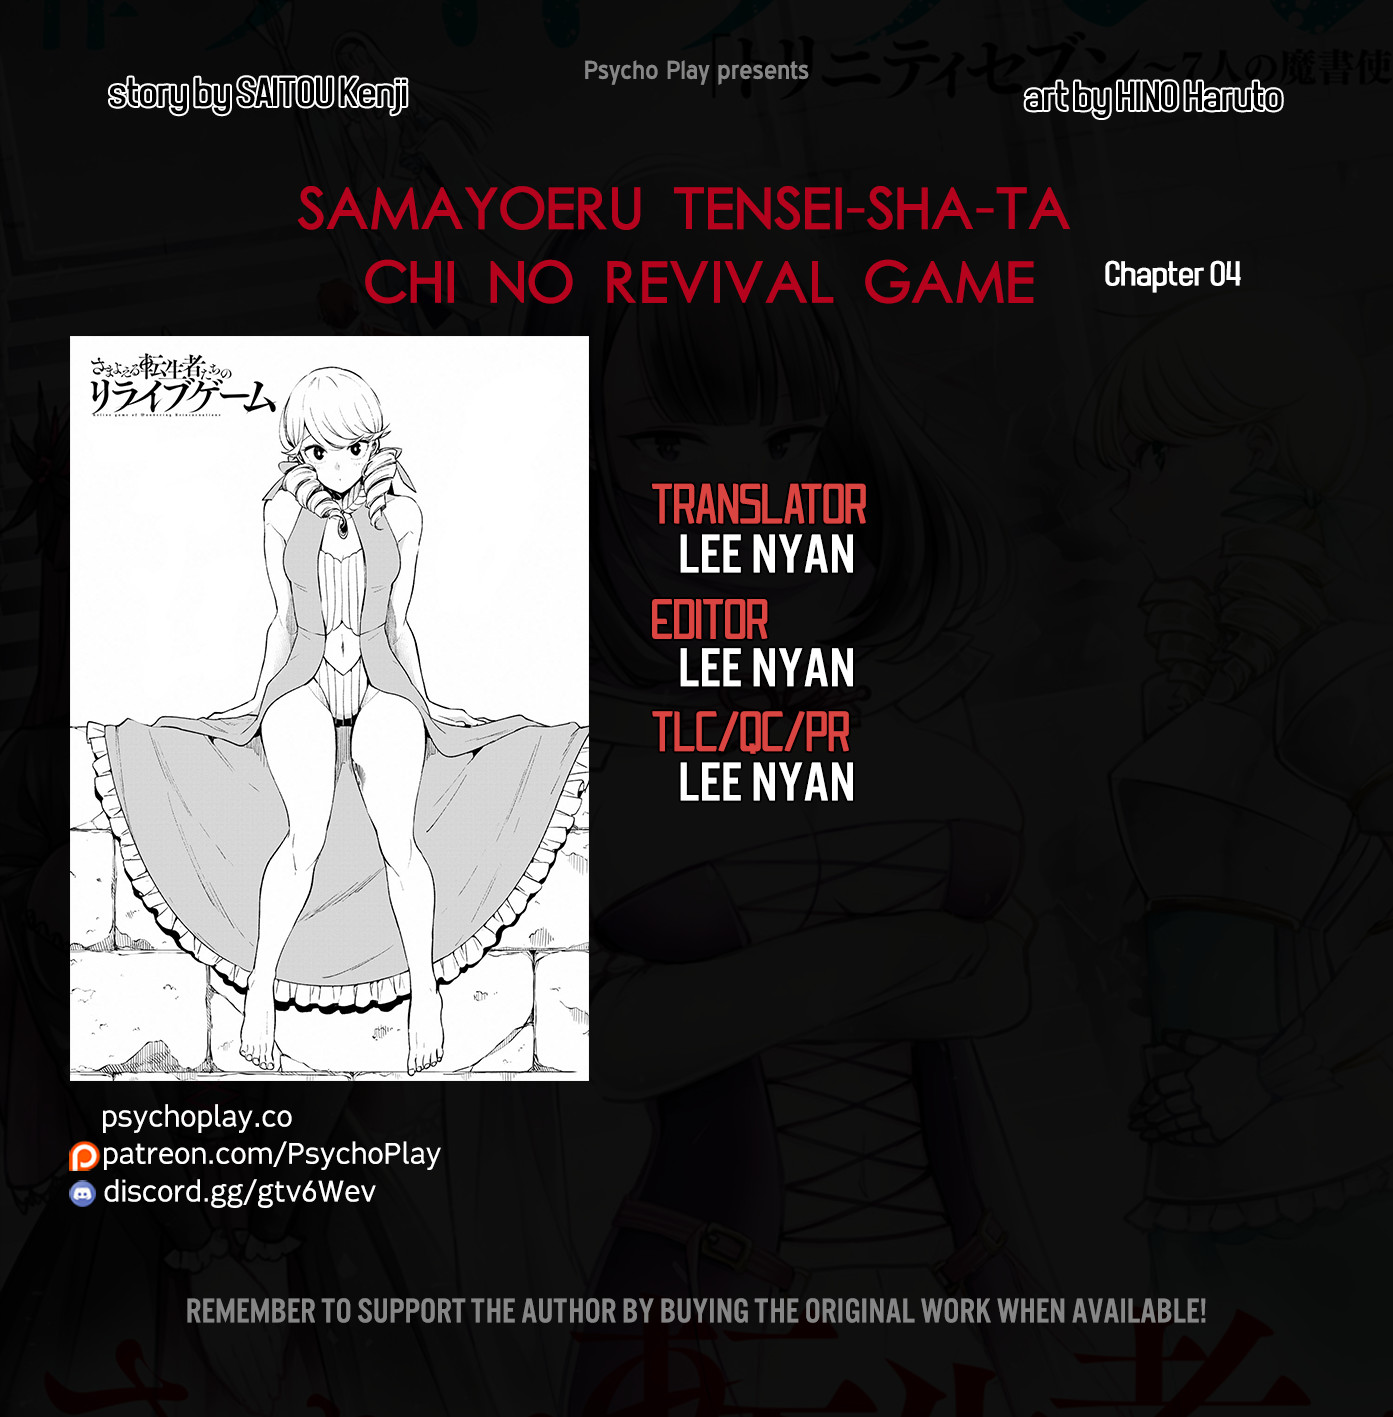 Samayoeru Tensei-Sha-Tachi No Revival Game - Page 1